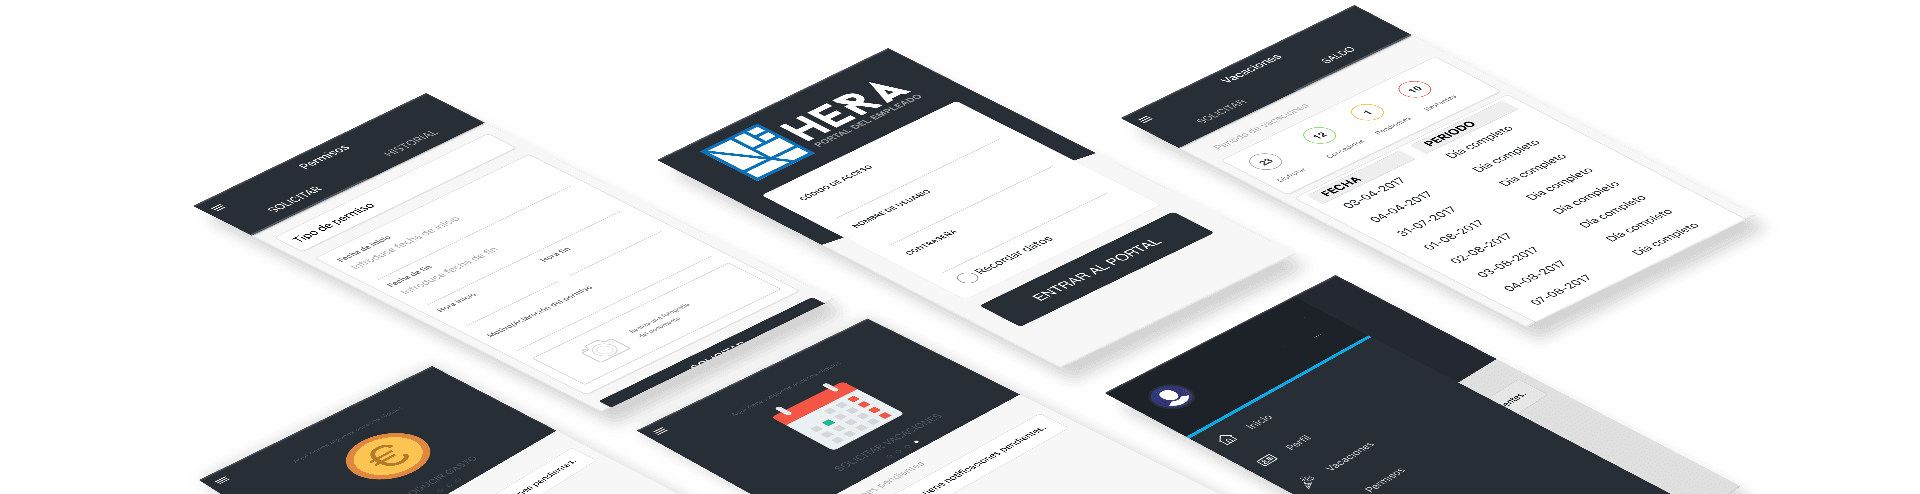 UI kit de la nueva app Hera